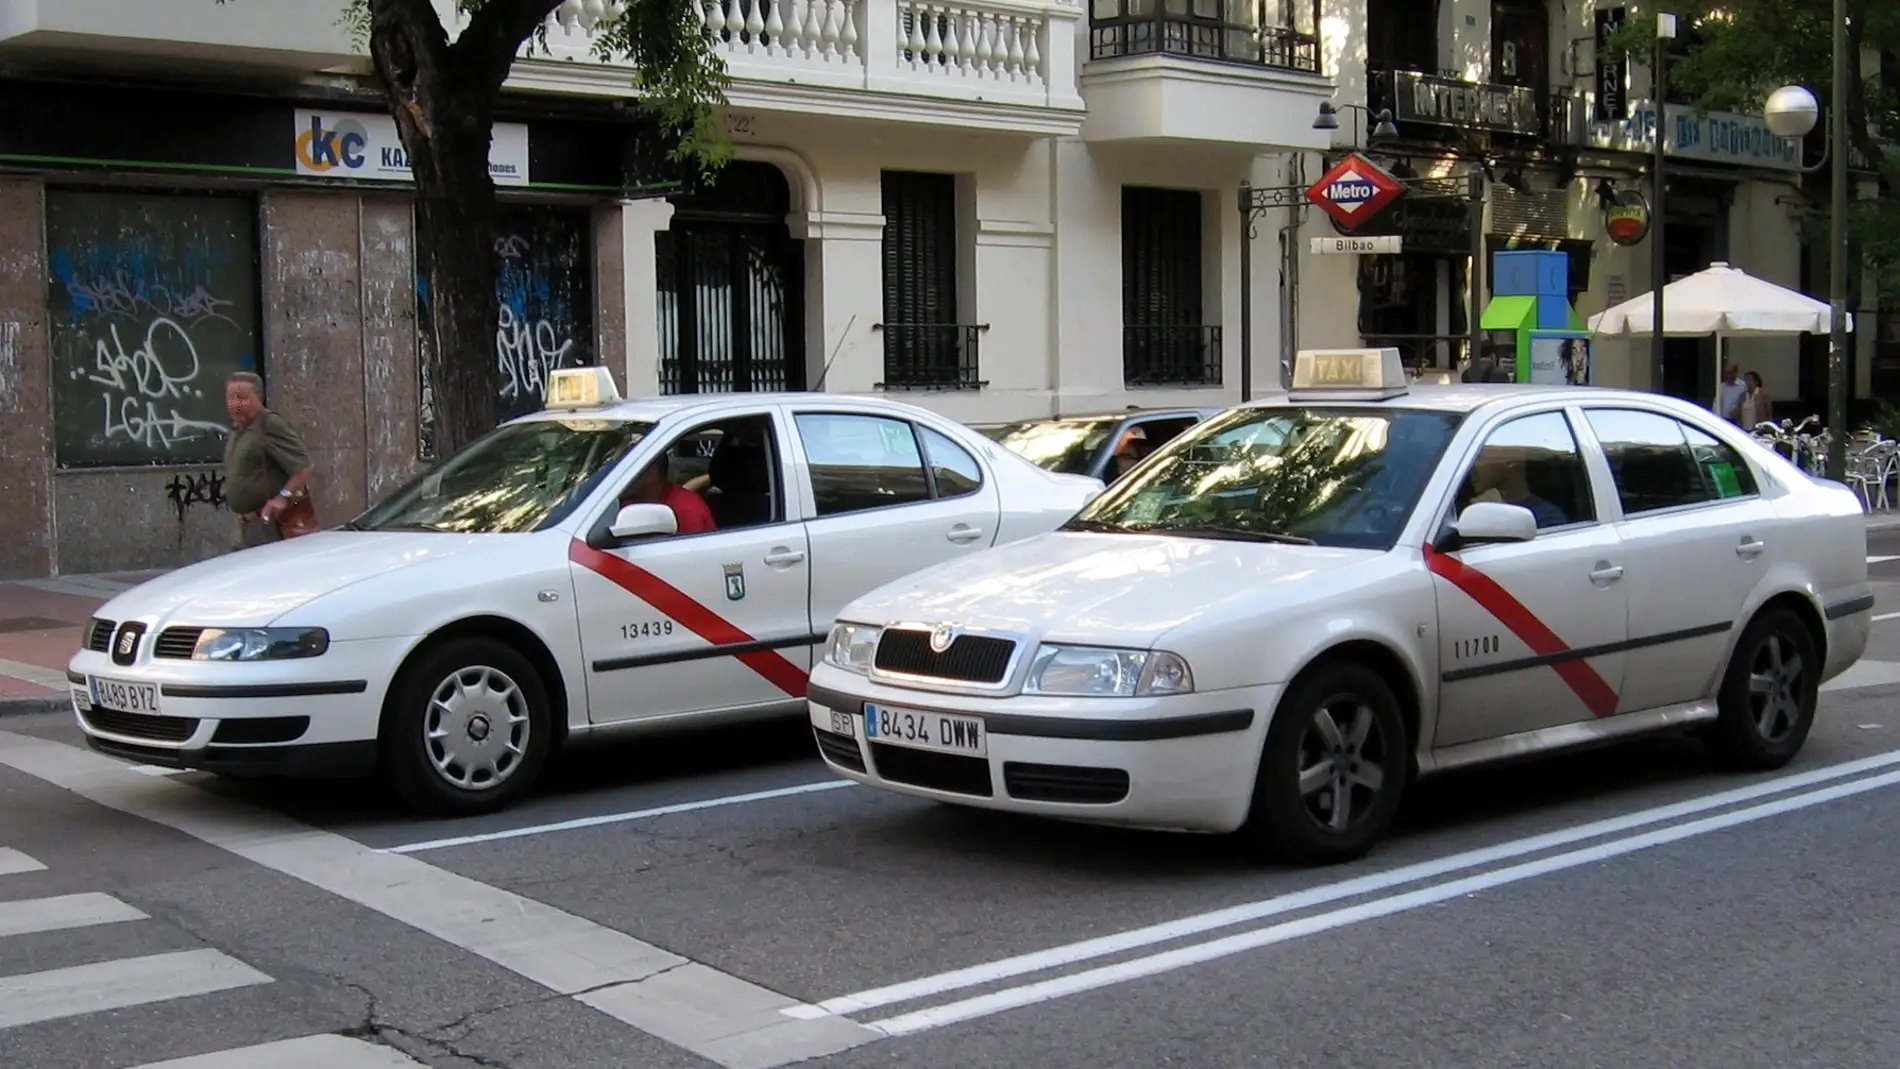 Taxis de Madrid